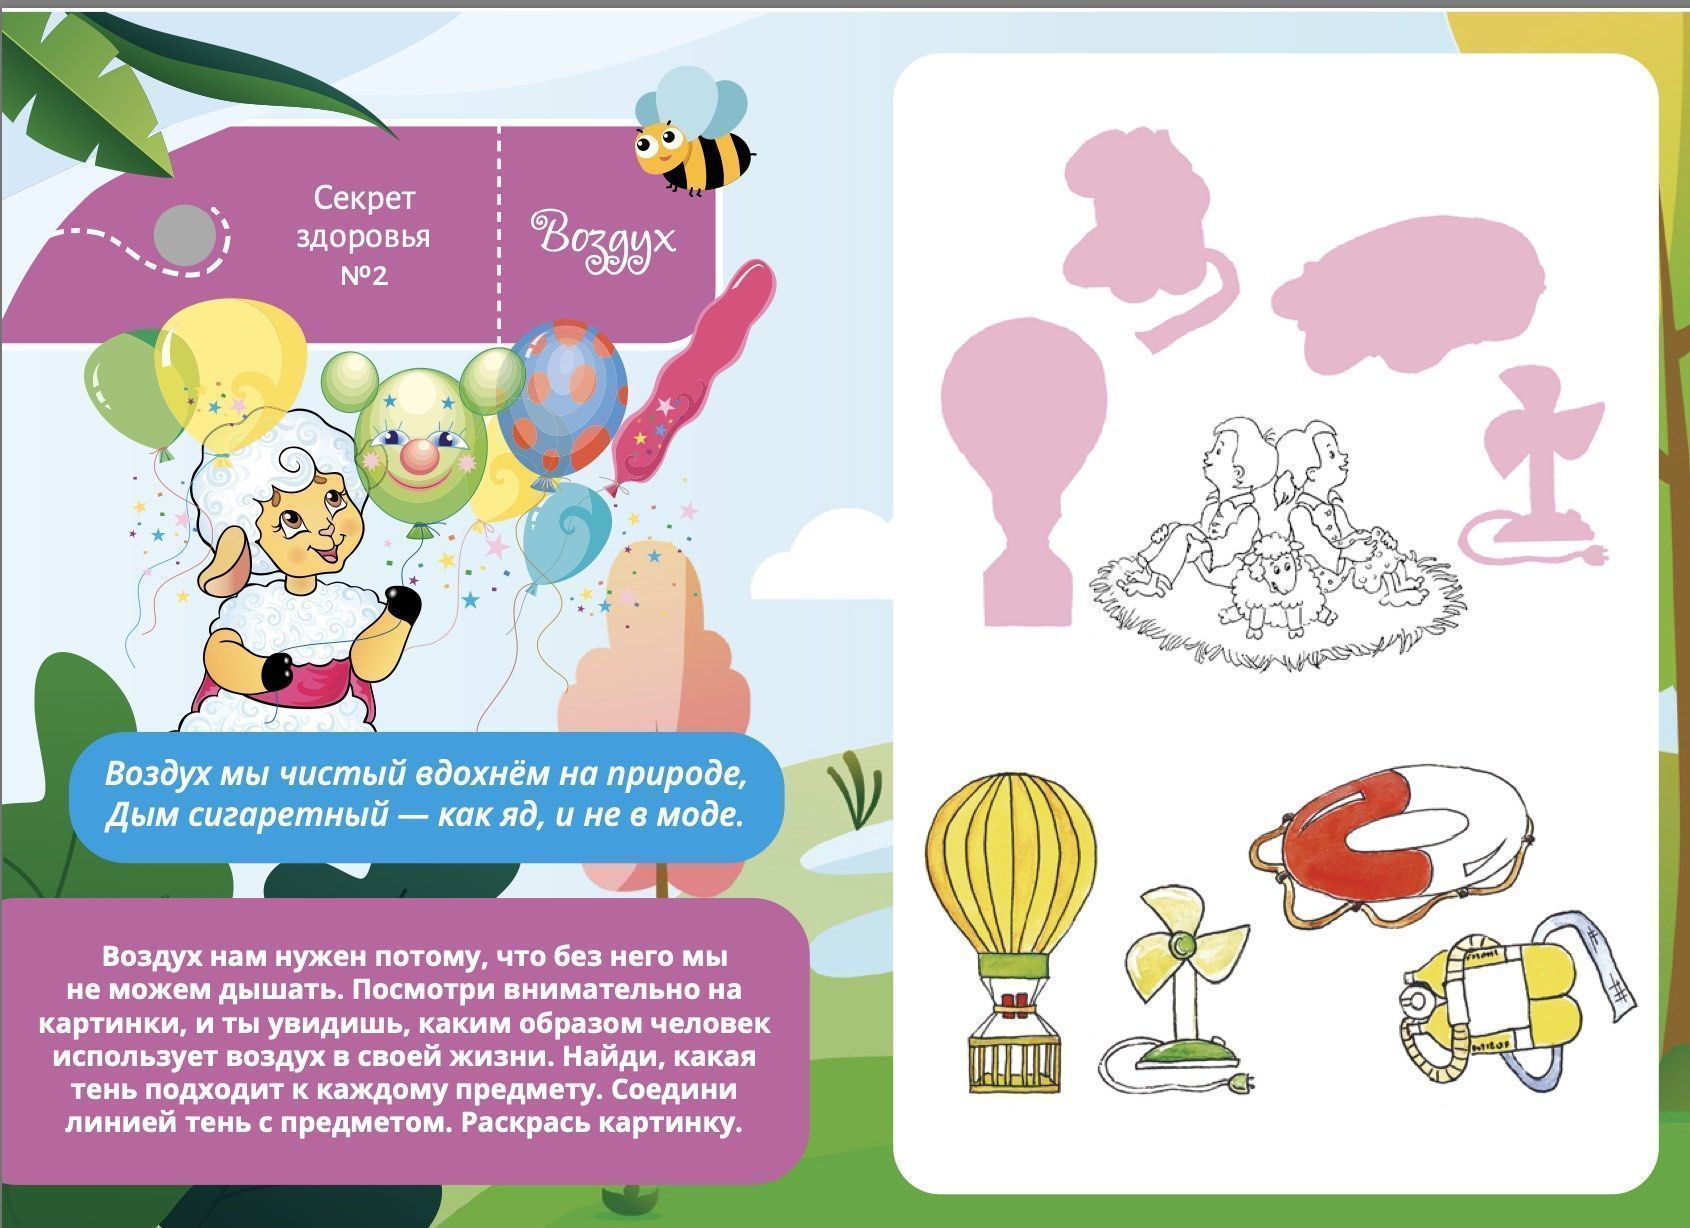 Приключения аиста Гоши. В поисках секретов здоровья. Содержит красочные картинки и игры, большой формат Для детей 6+